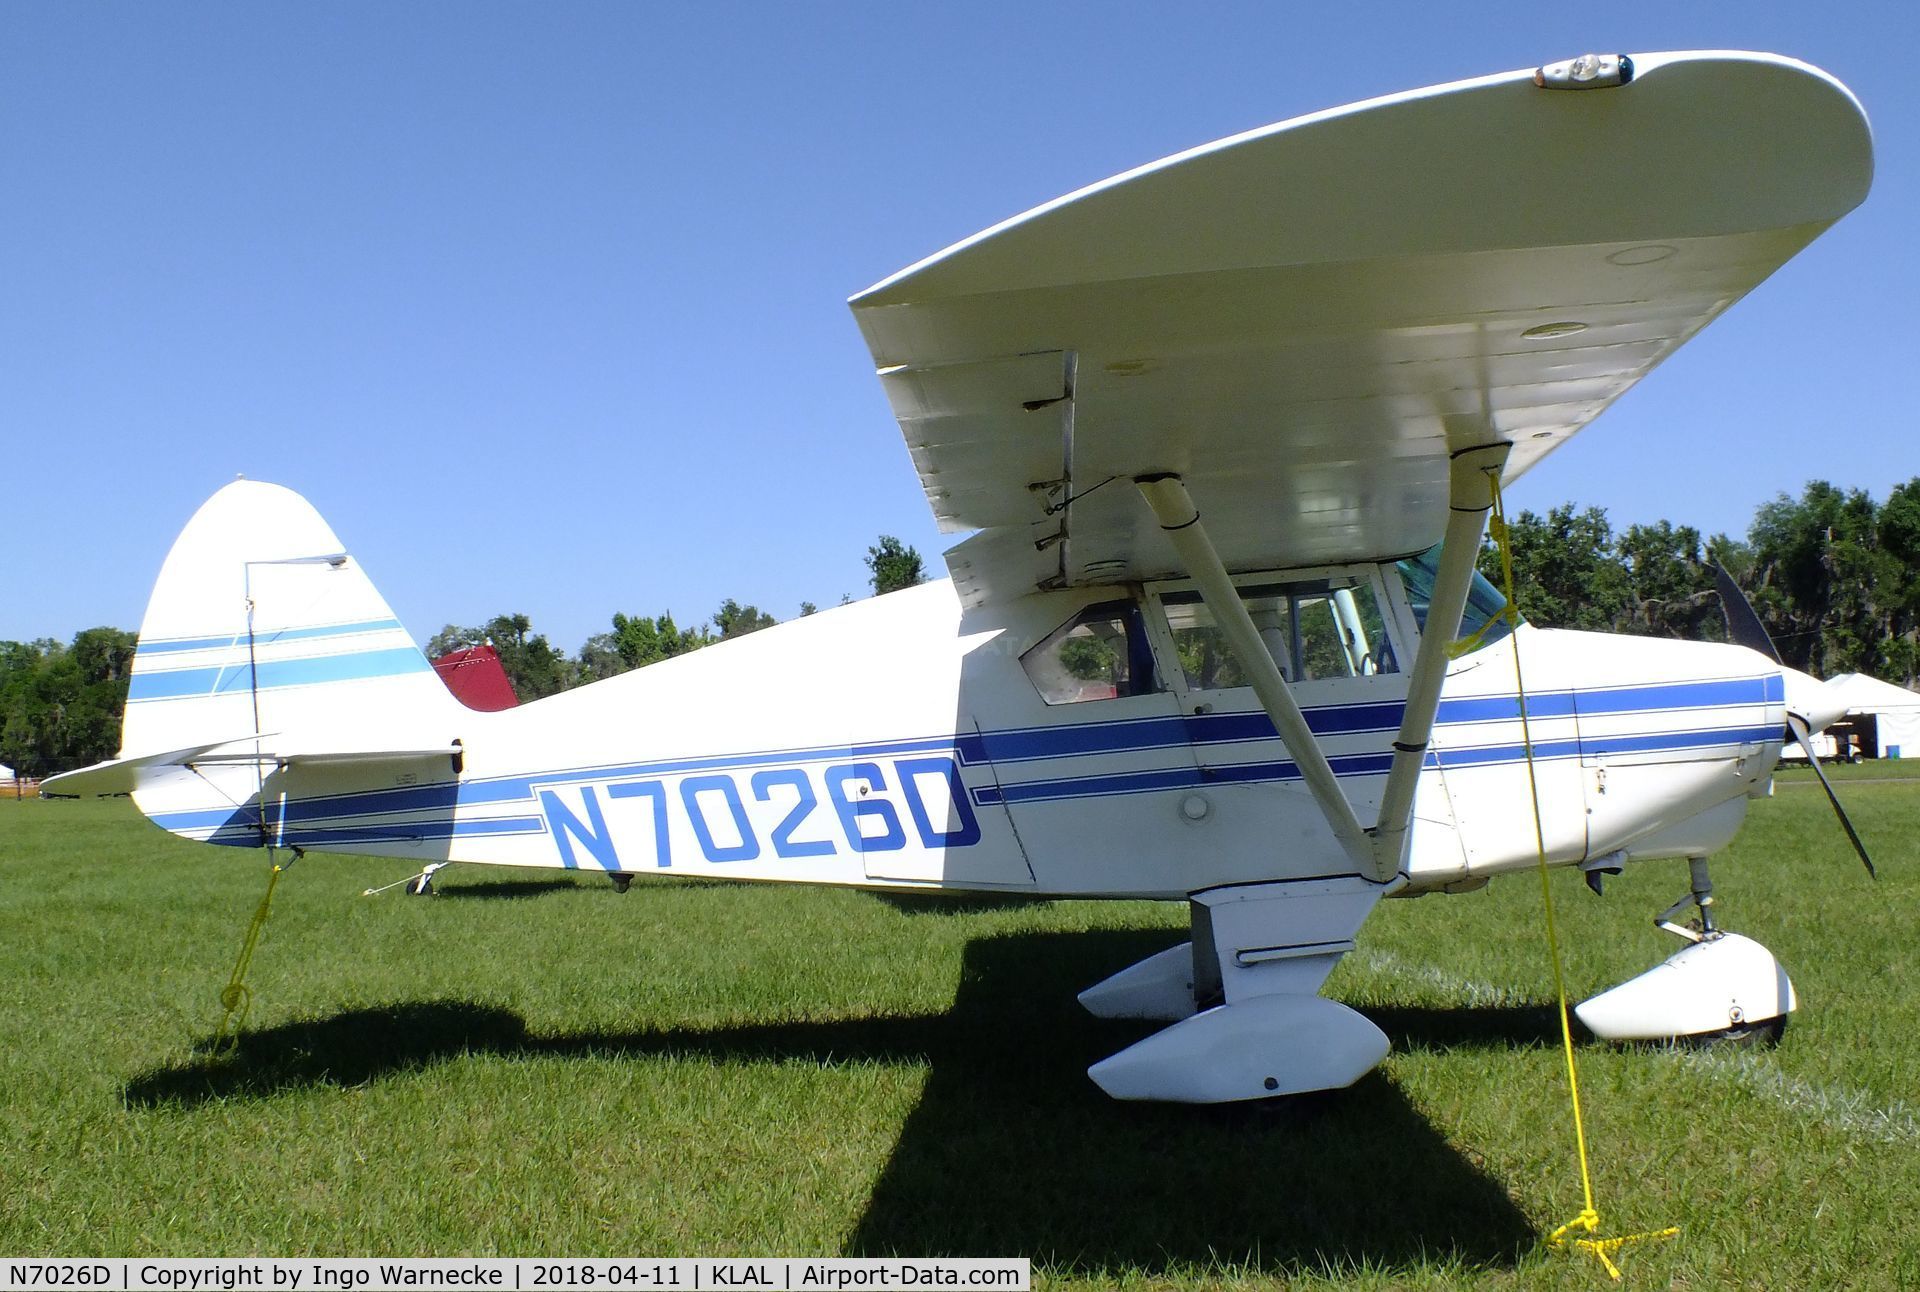 N7026D, 1957 Piper PA-22-150 Tri-Pacer C/N 22-4920, Piper PA-22-150 Tri-Pacer at 2018 Sun 'n Fun, Lakeland FL